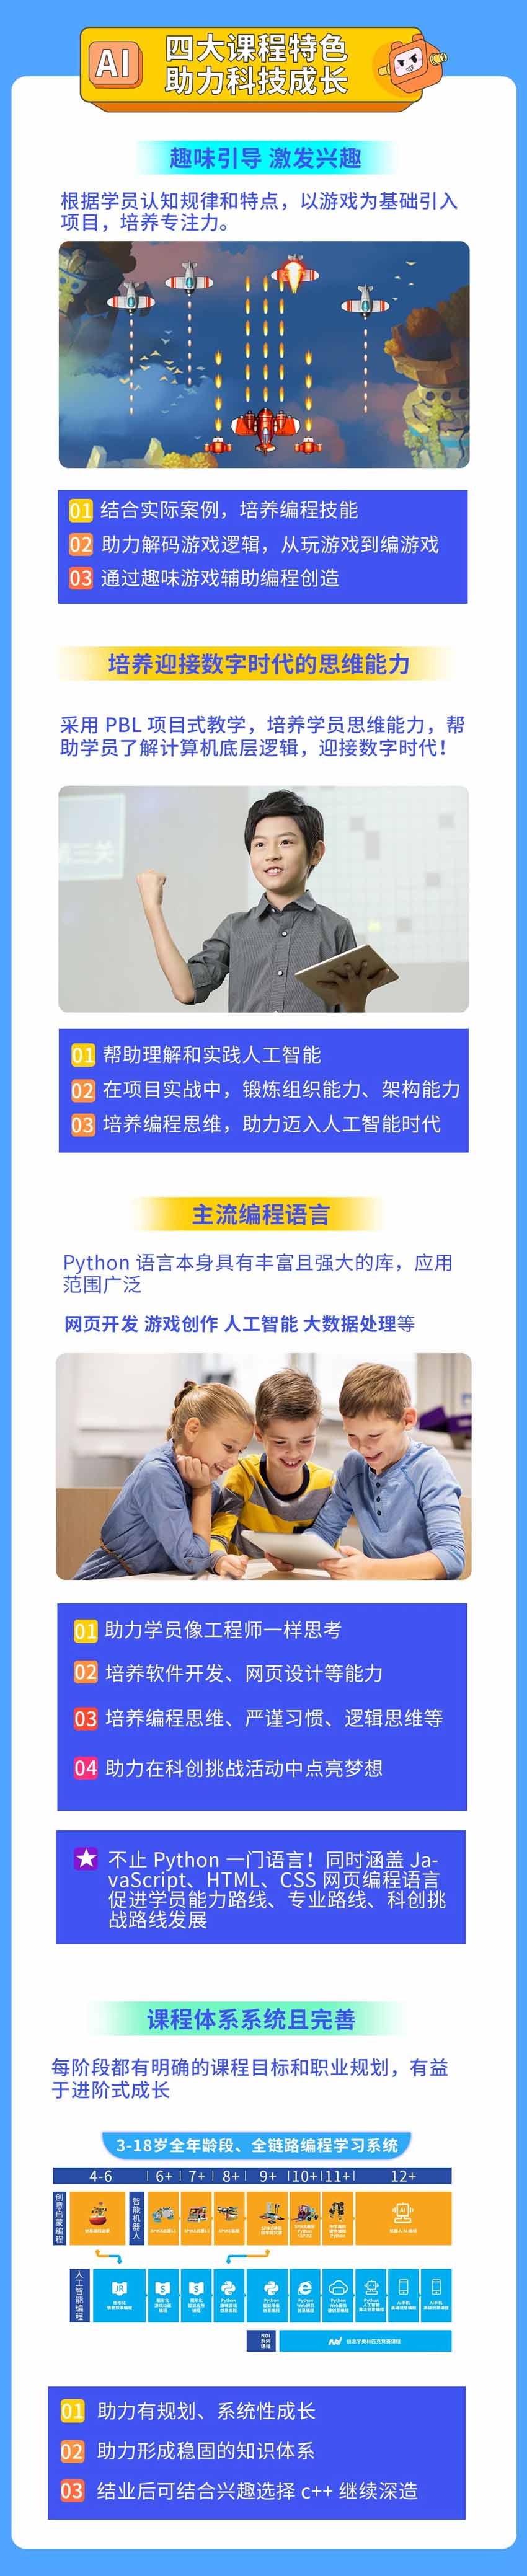 广州童程童美AI人工智能编程课程特色 助力科技成长